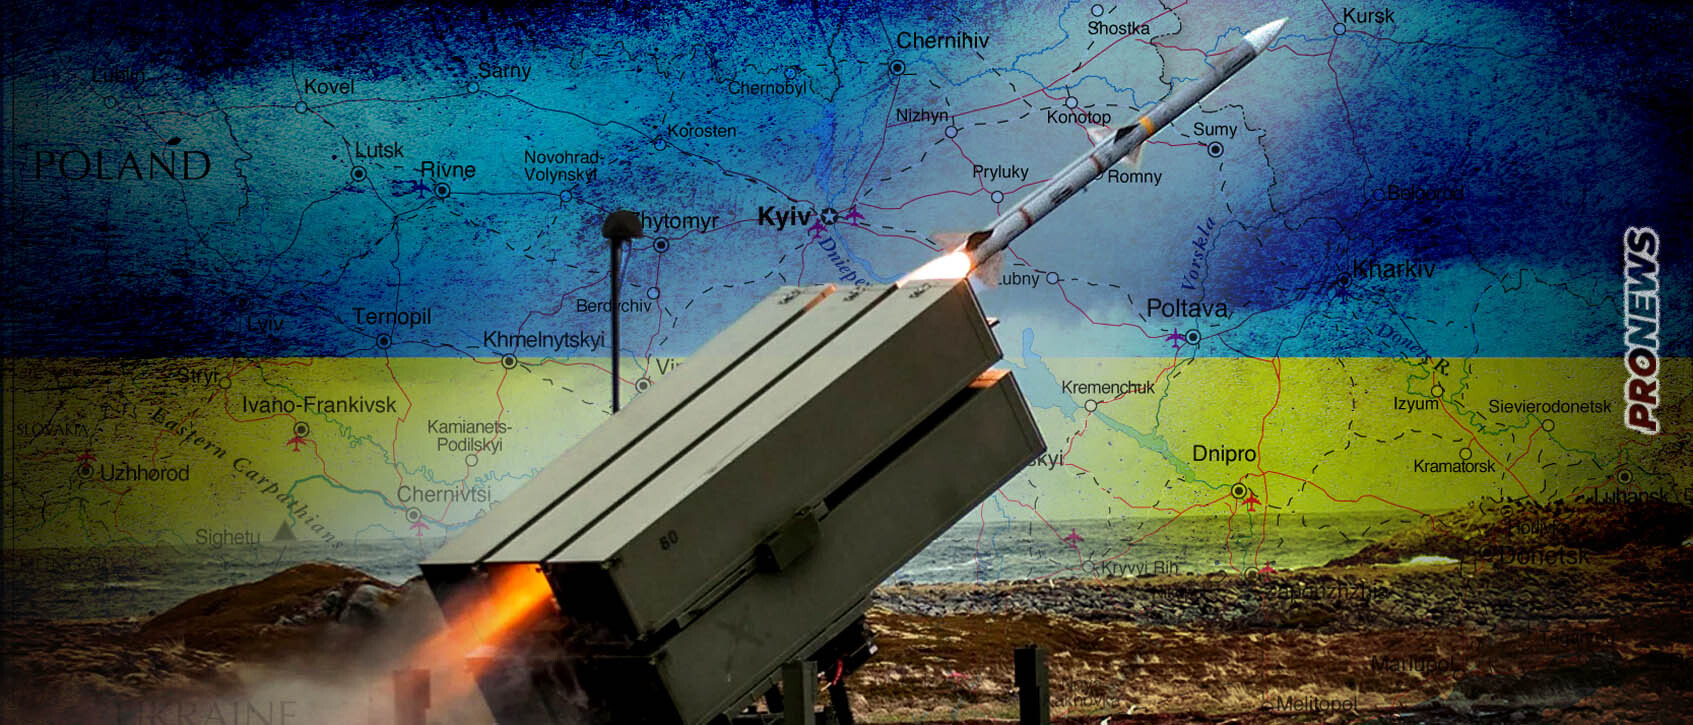 Μόσχα: Ανακοίνωσε για πρώτη  φορά καταστροφή αντιαεροπορικών συστημάτων NASAMS του ΝΑΤΟ